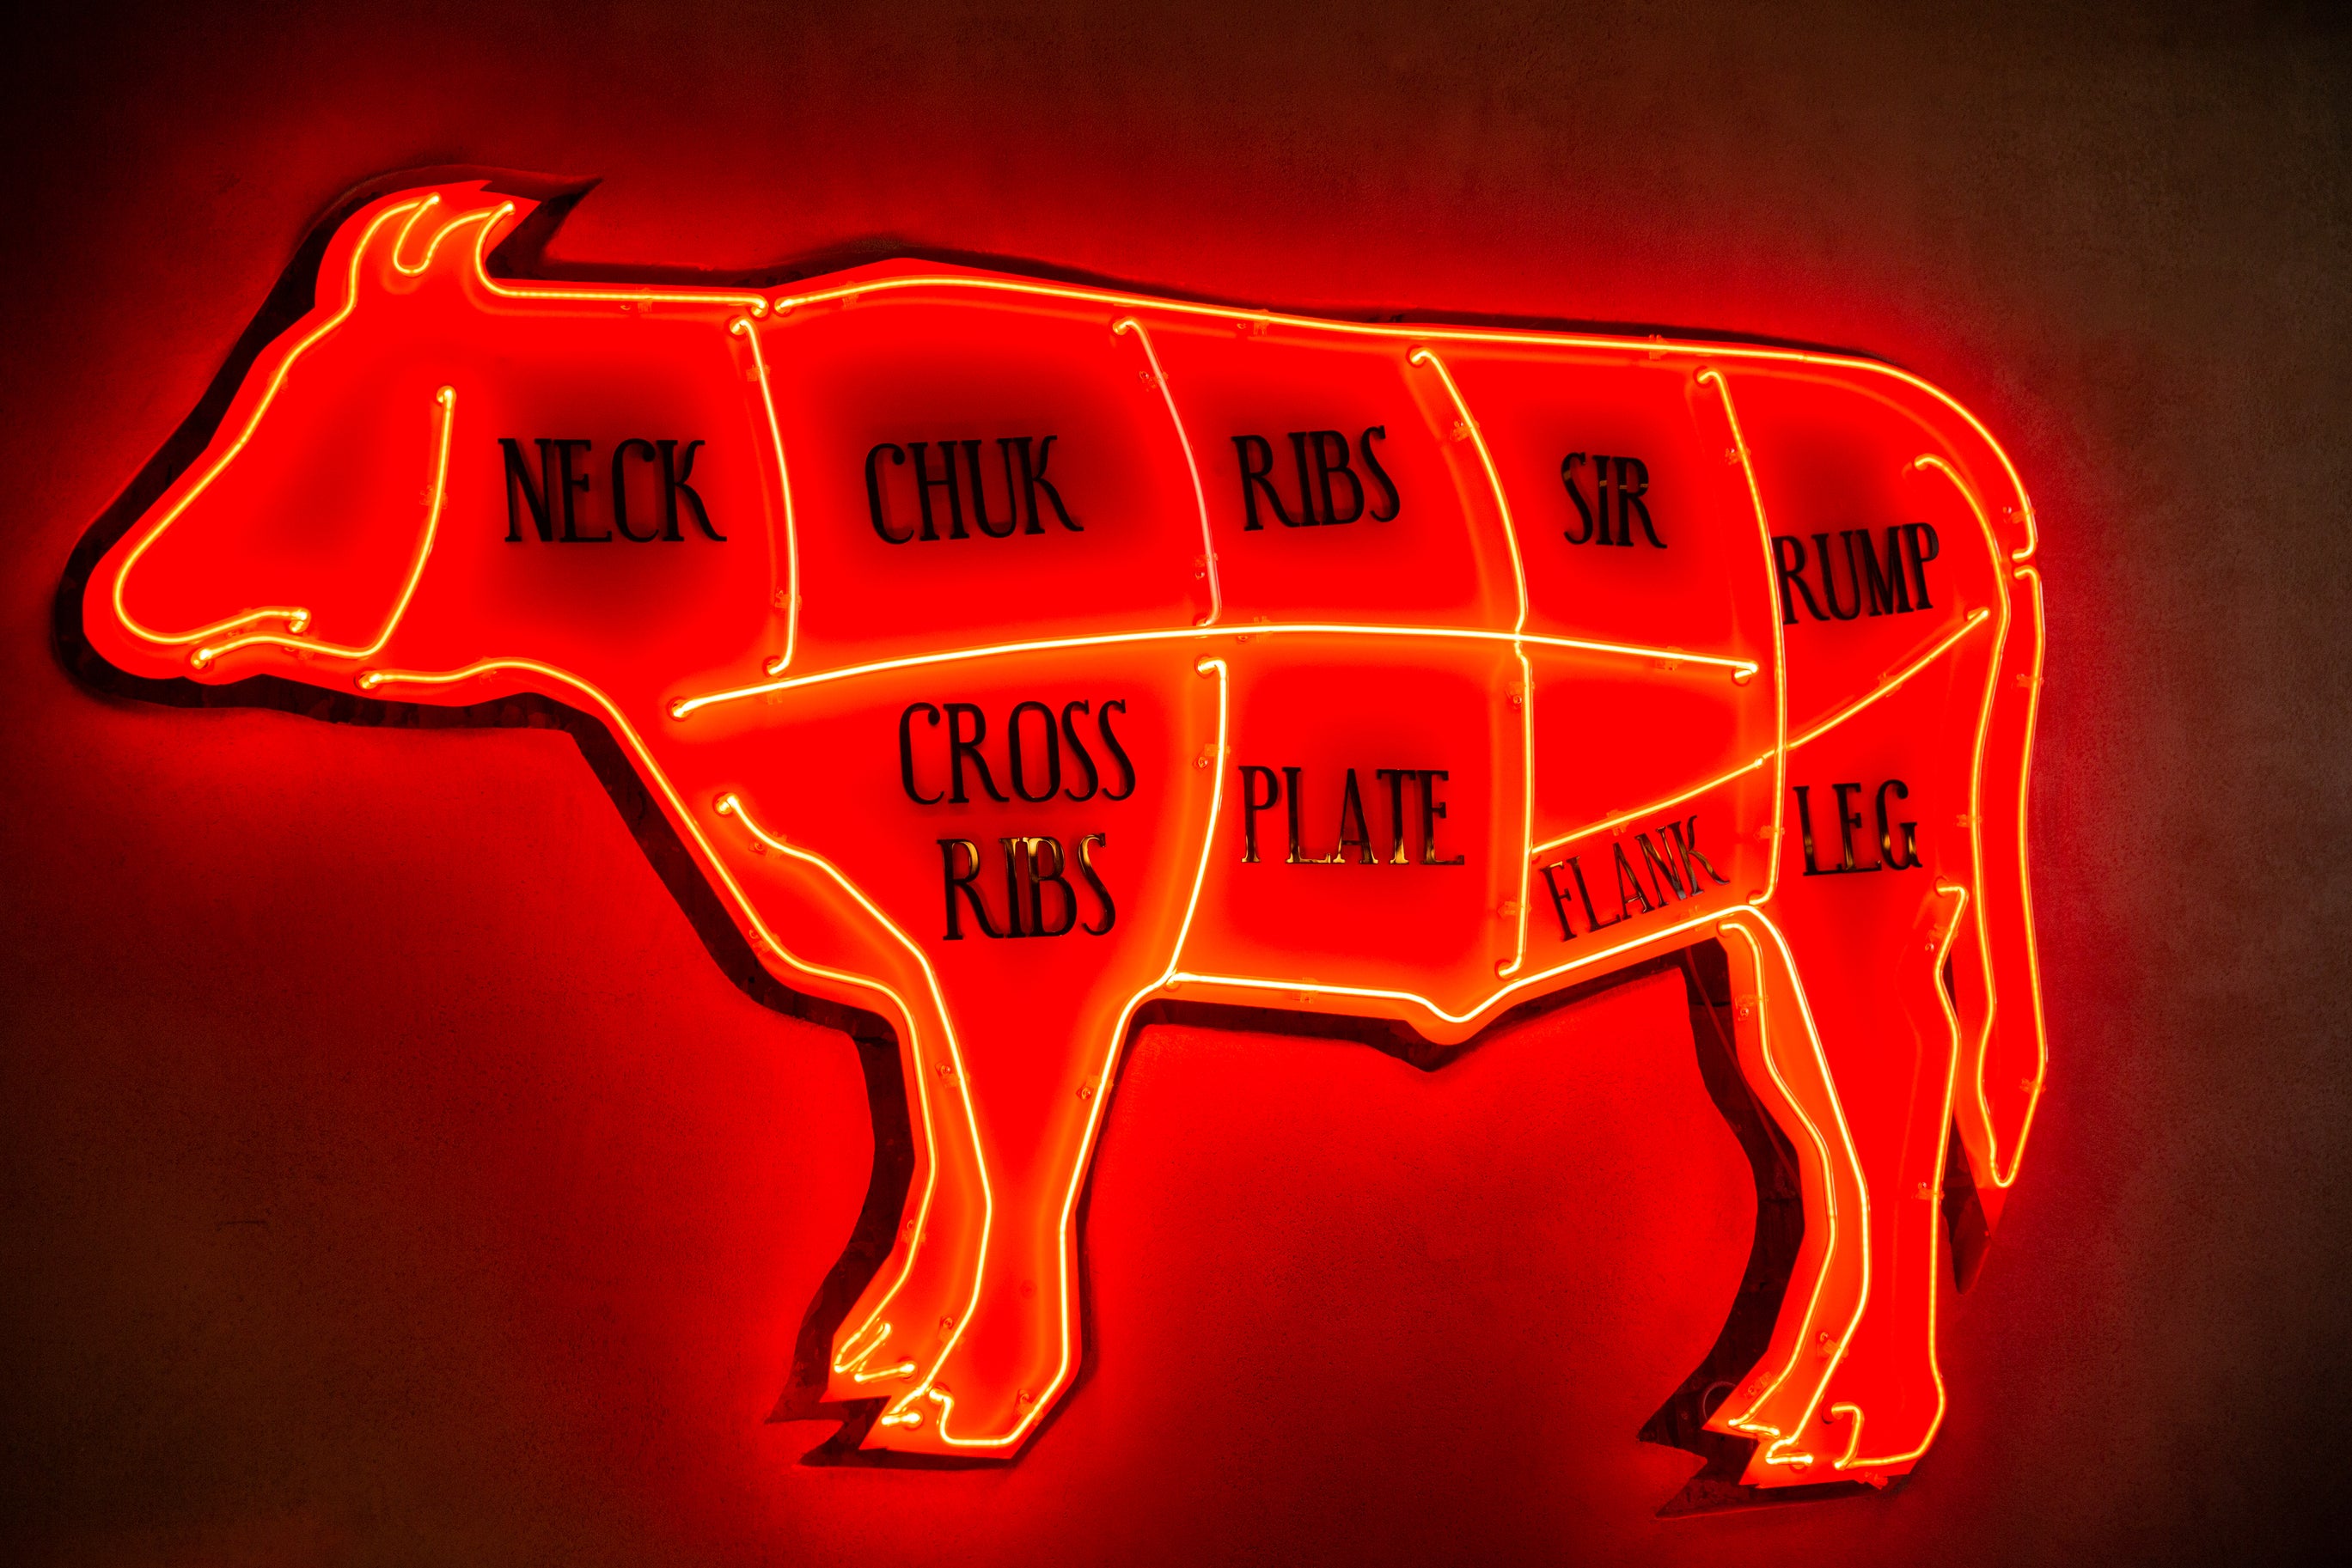 Flank Steak – BillyDoe Meats